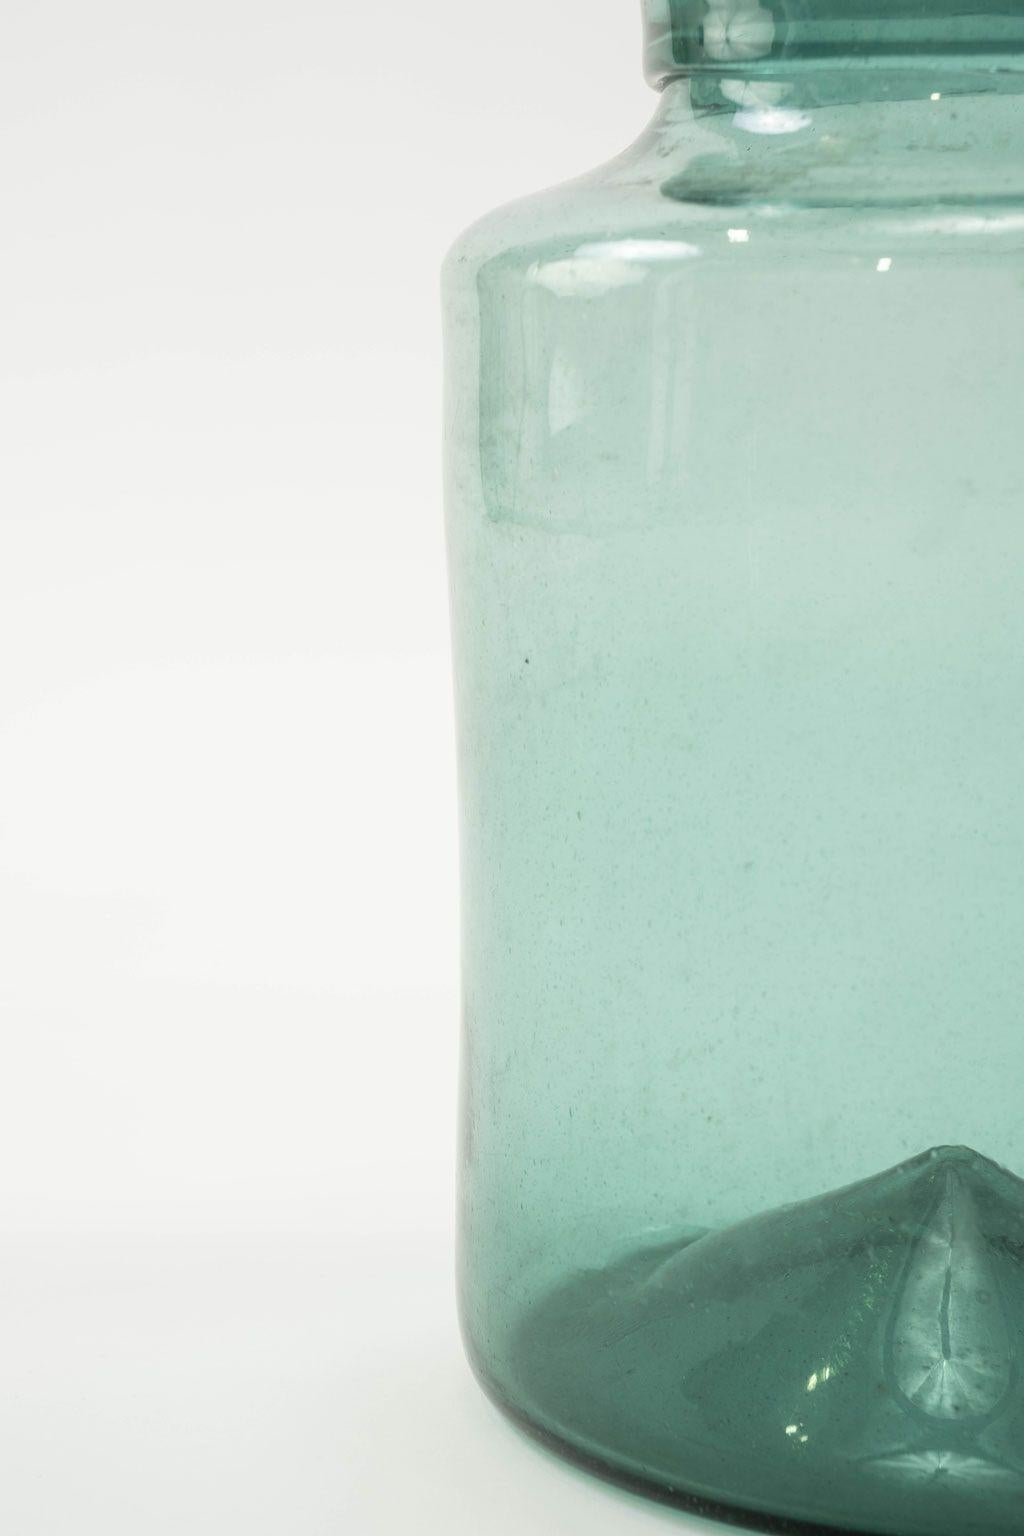 Grande jarre en verre antique soufflée à la main avec une teinte vert bleuté. Trois sont disponibles en différentes tailles et formes (voir les trois dernières images). Chaque pièce est vendue individuellement au prix de 795 $.